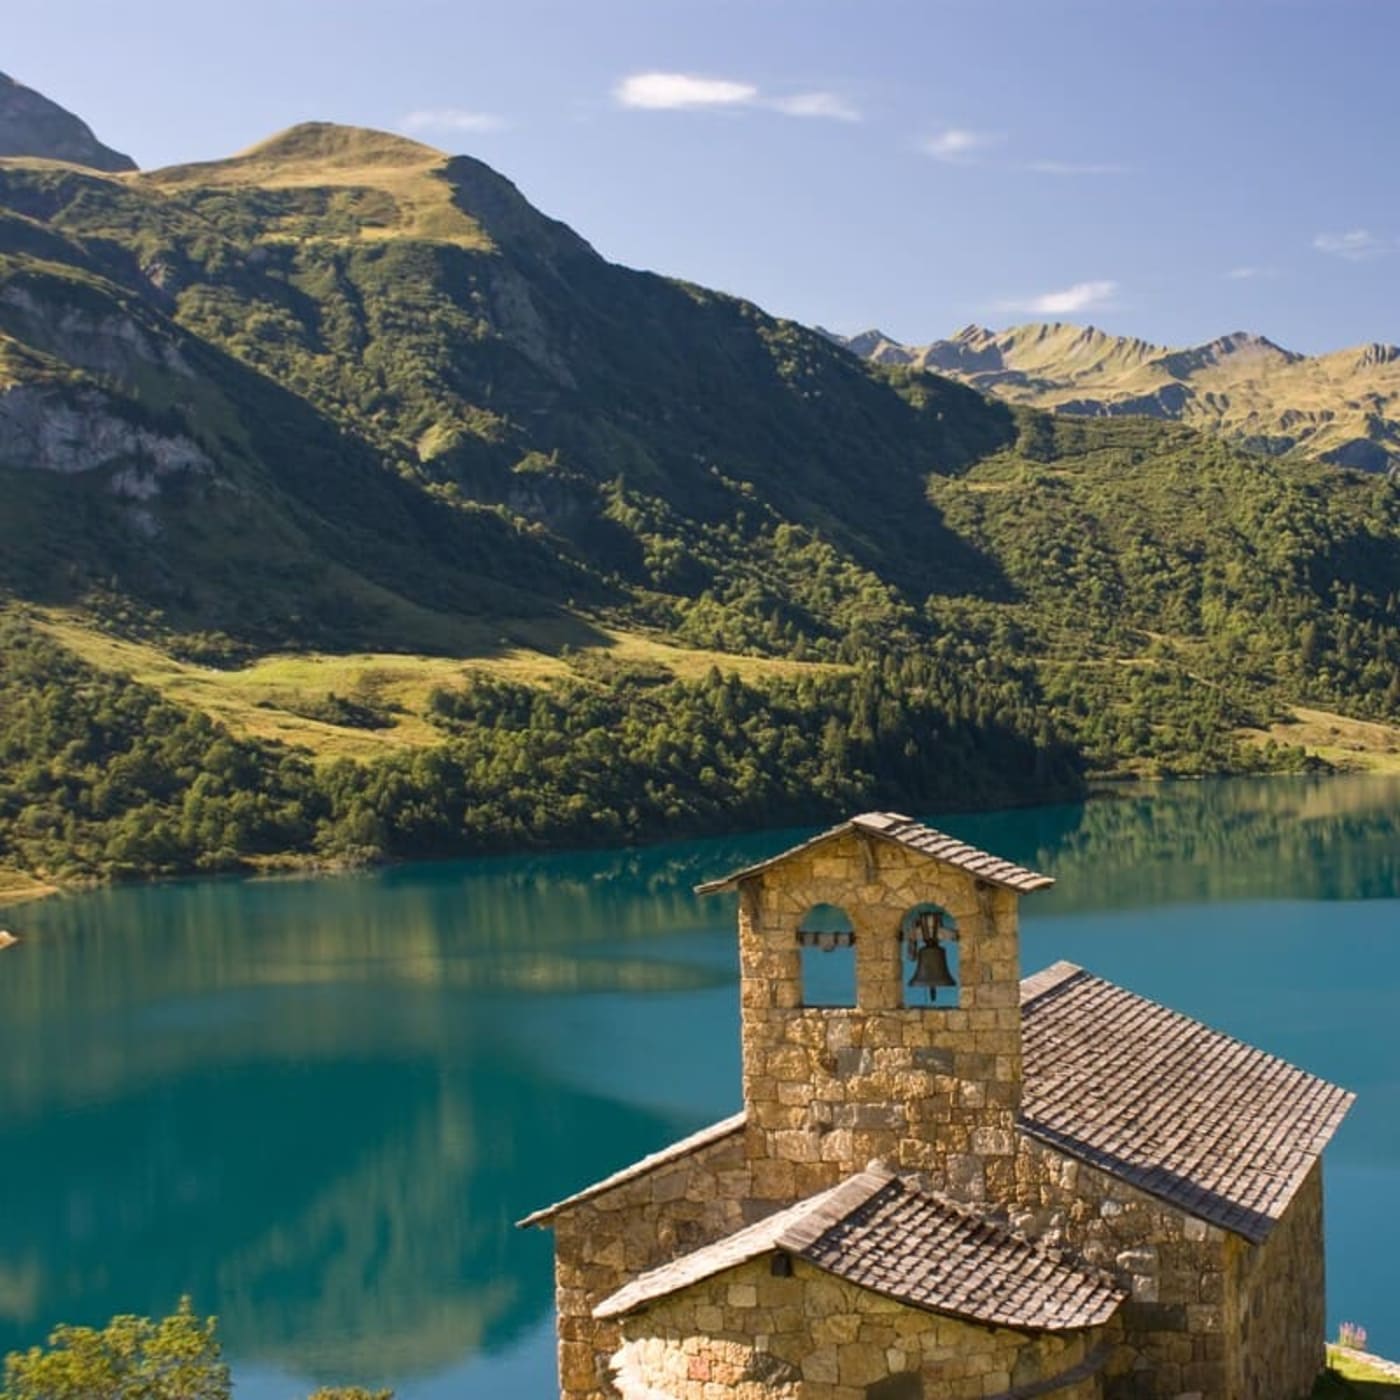 Randonnée au lac de Roselend : vue sur la chapelle et le lac en arrière plan